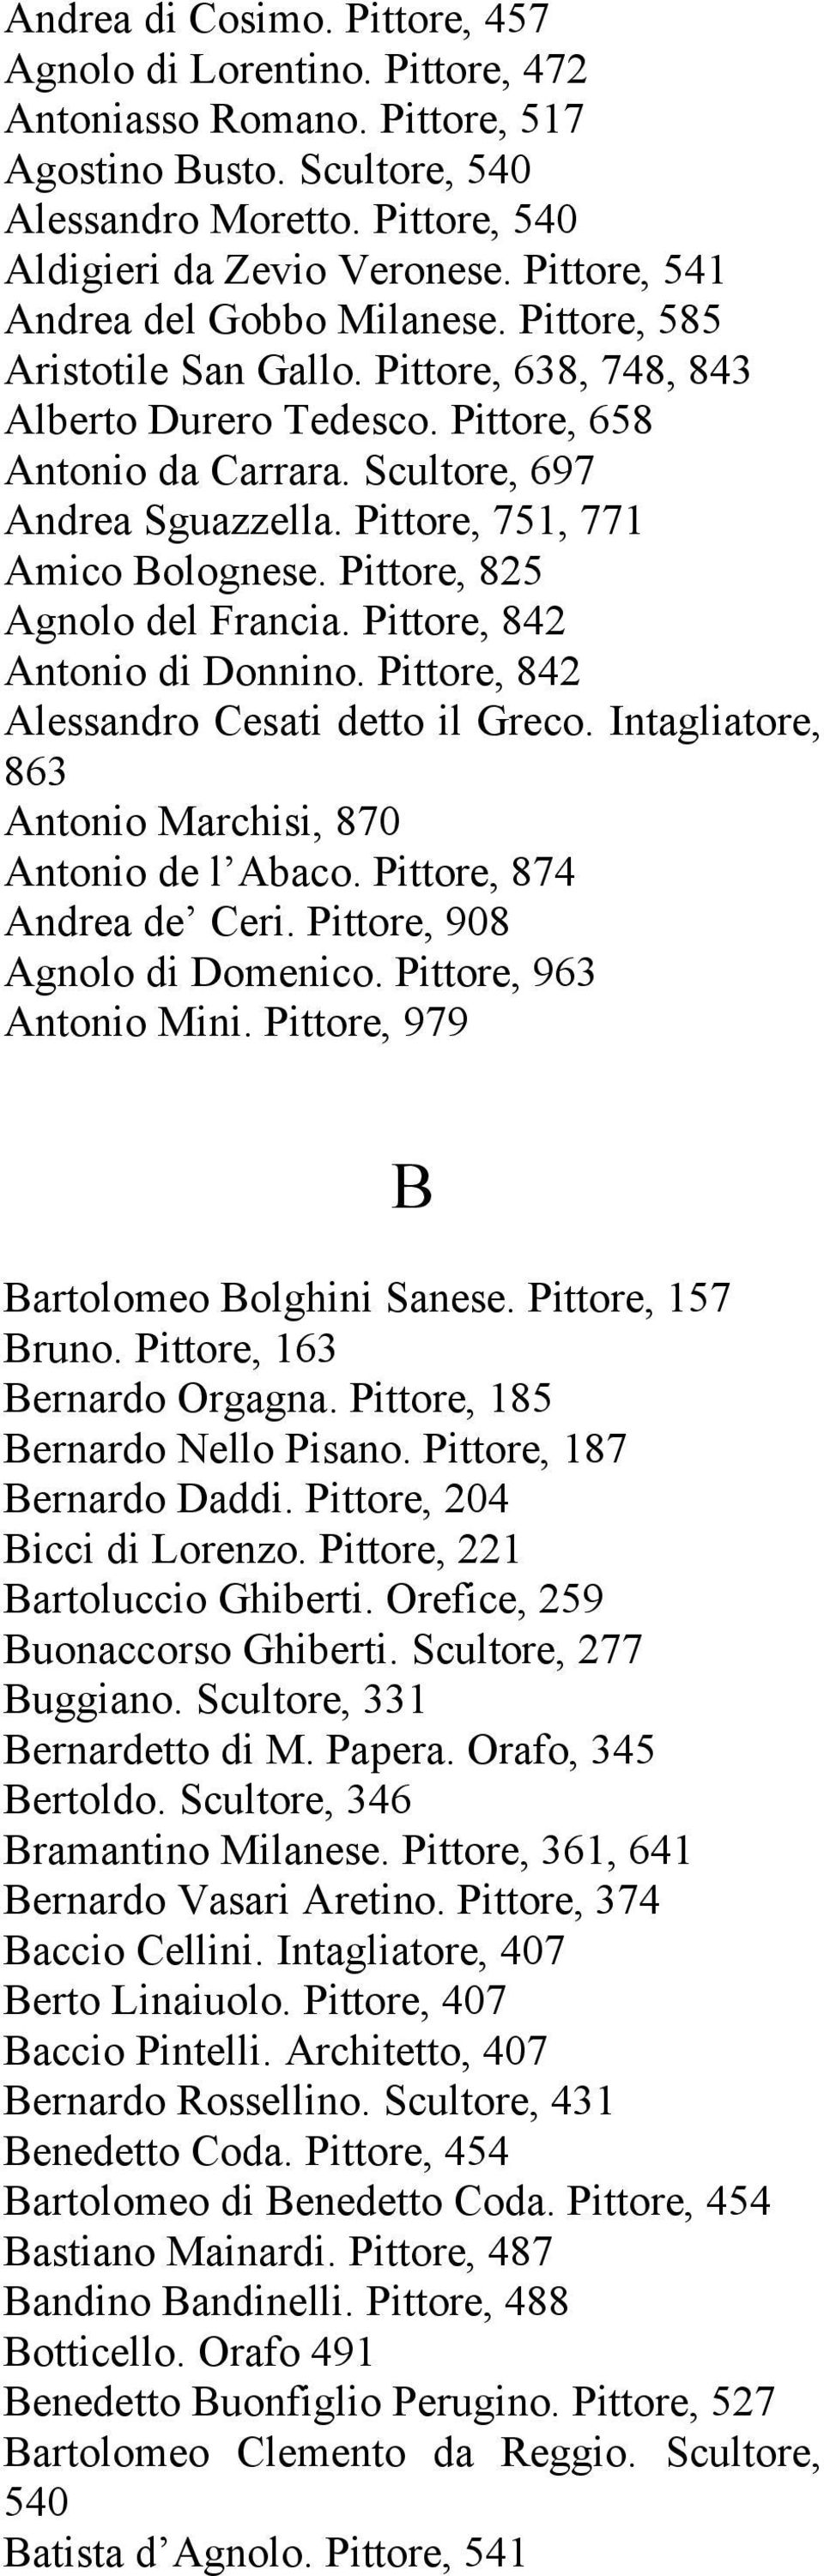 Pittore, 751, 771 Amico Bolognese. Pittore, 825 Agnolo del Francia. Pittore, 842 Antonio di Donnino. Pittore, 842 Alessandro Cesati detto il Greco.